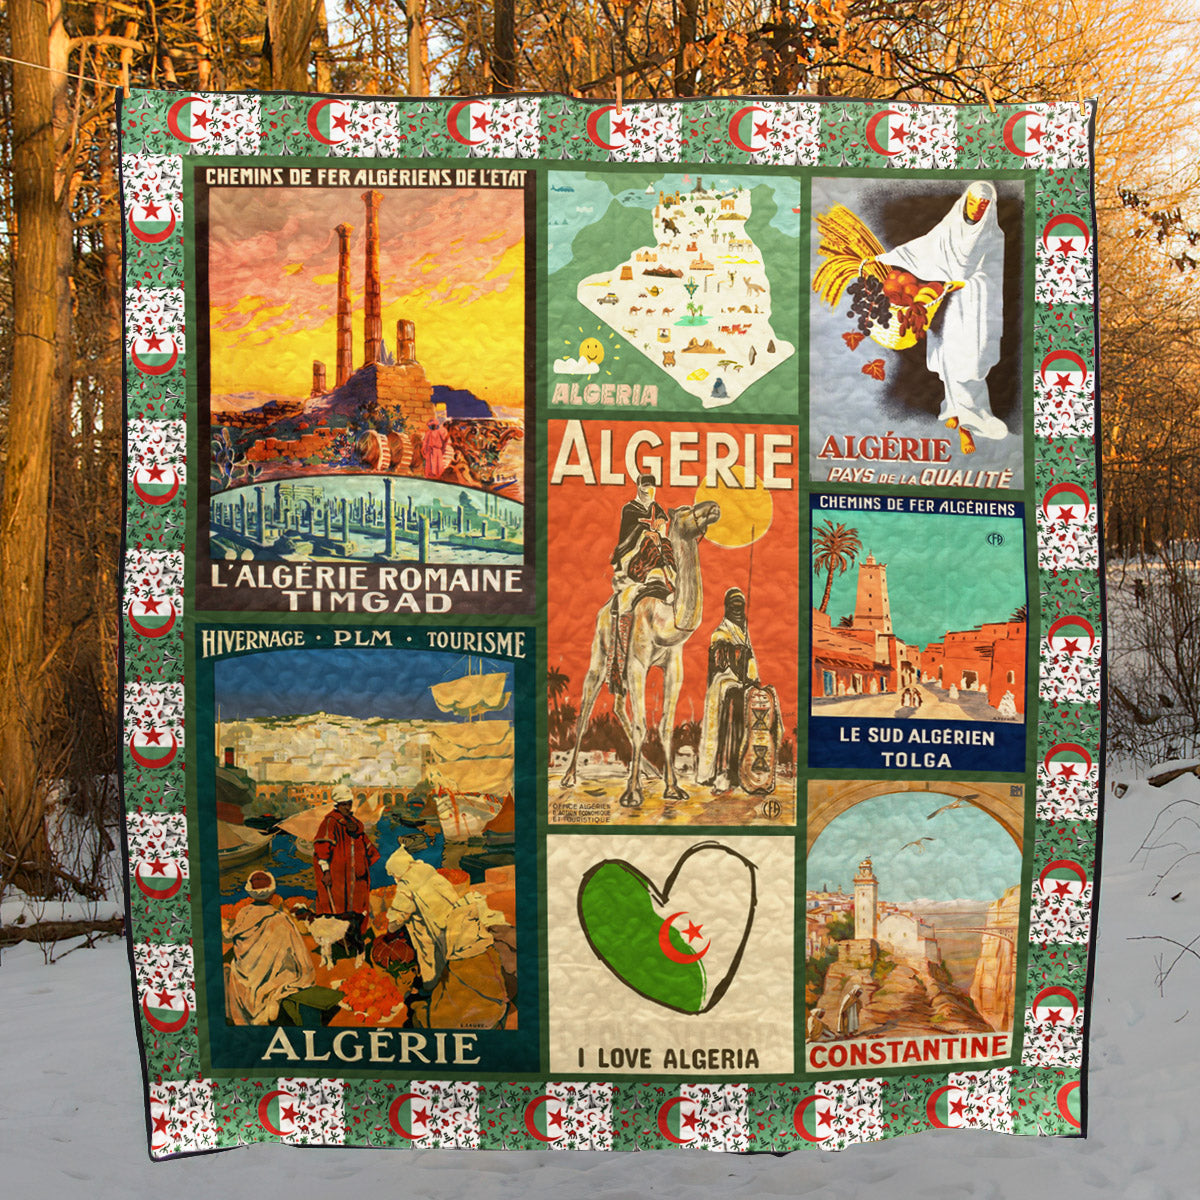 Algeria YE260625 TBG Quilt Blanket